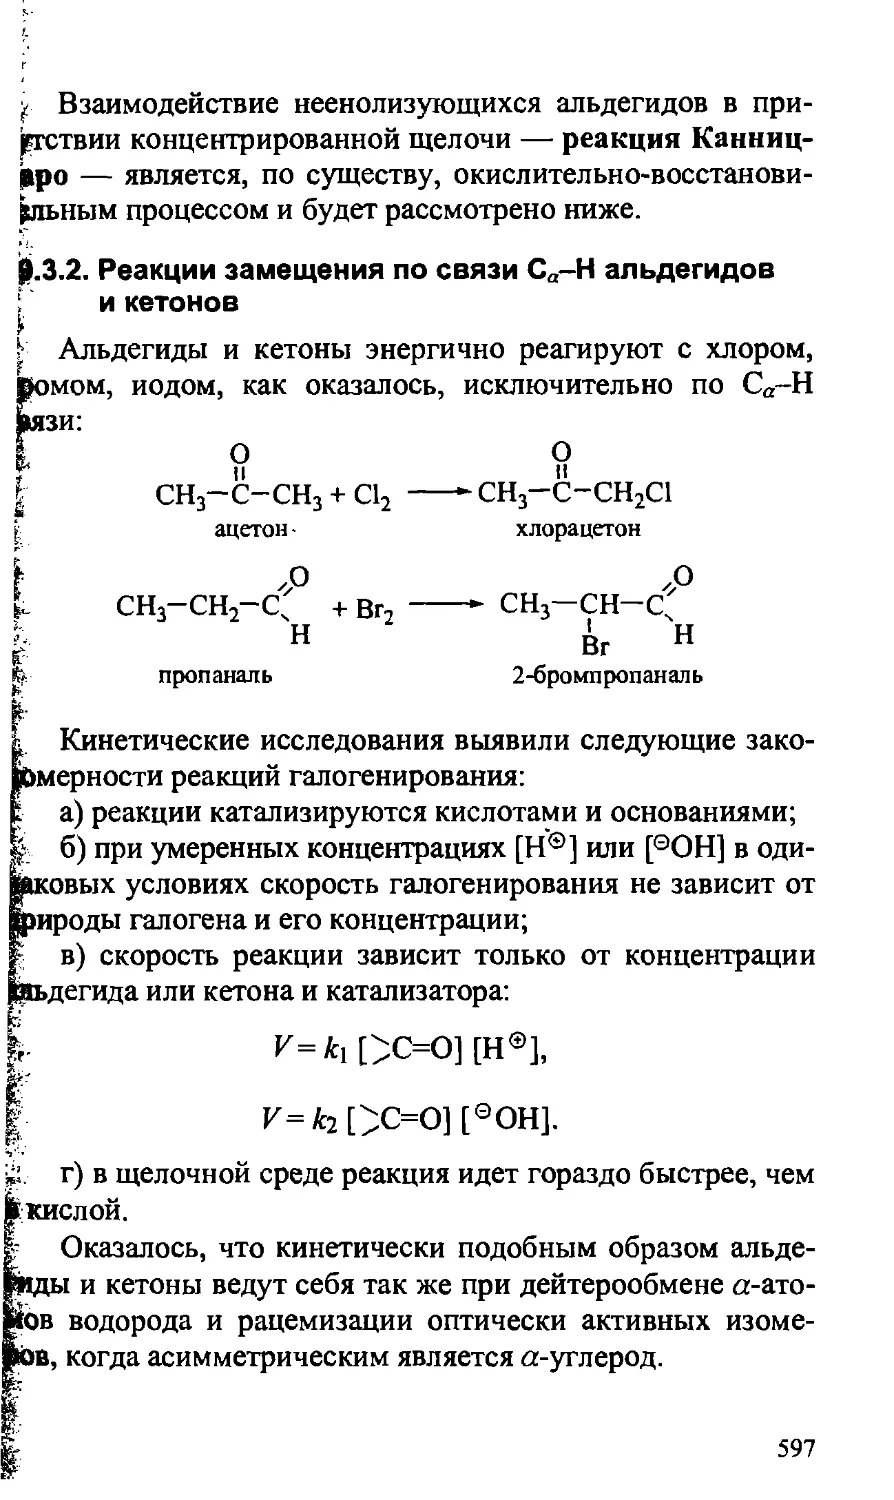 {597} 19.3.2. Реакции замещения по связи Са-Н альдегидов и кетонов